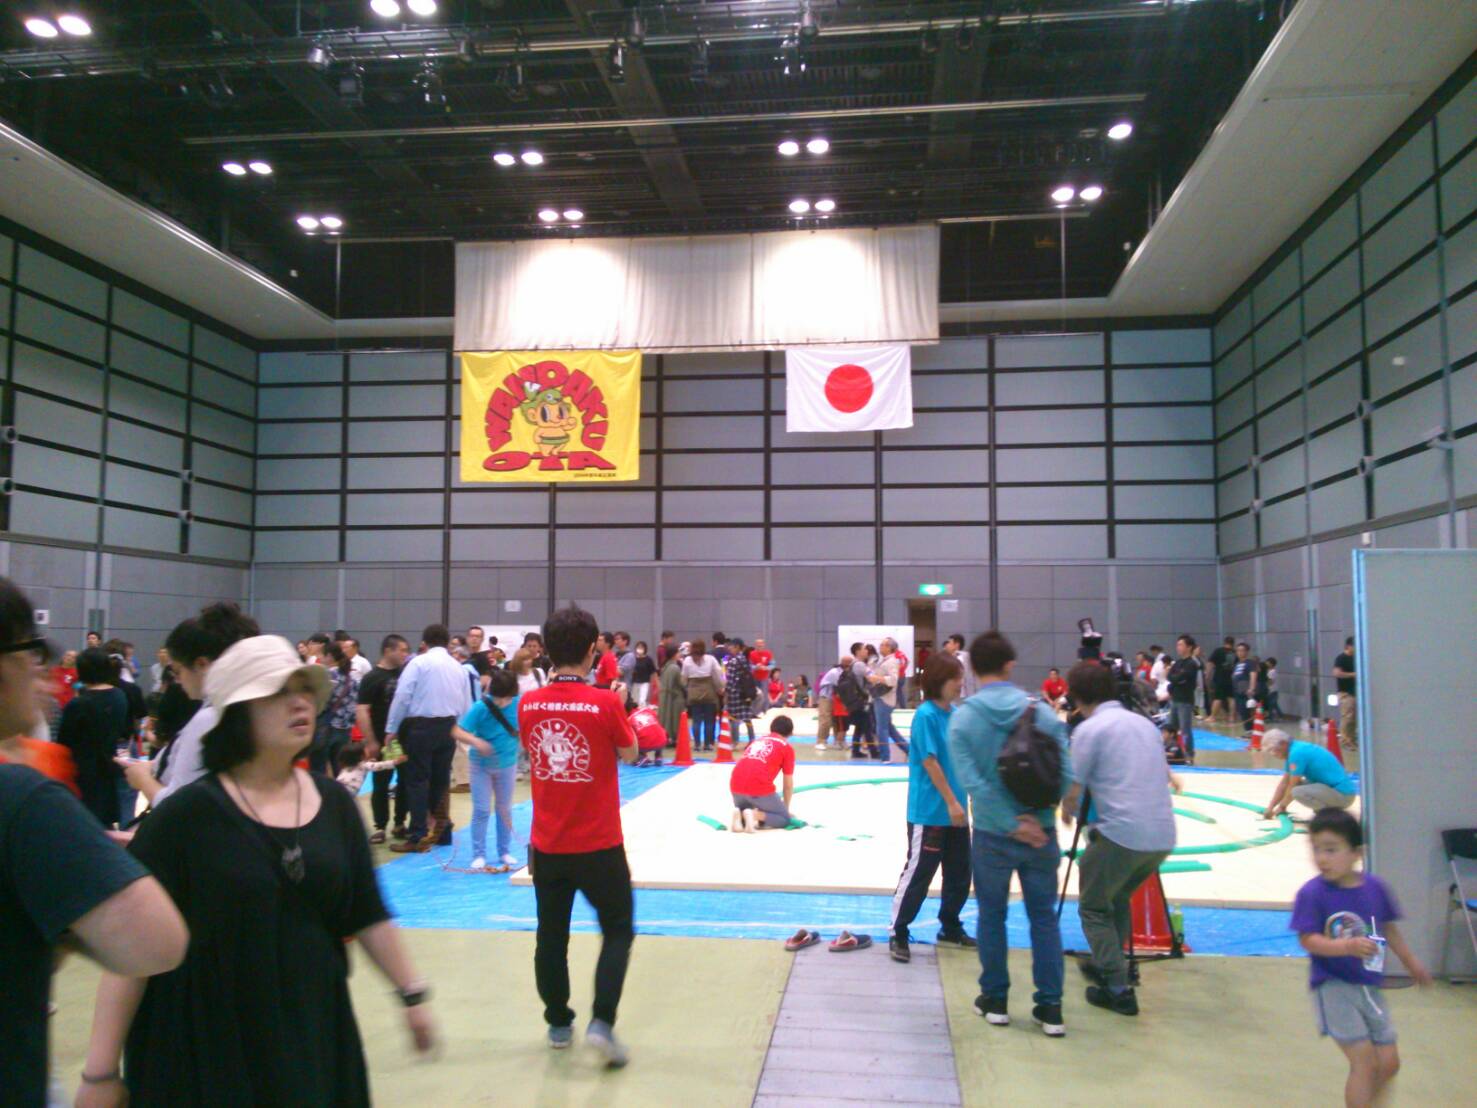 わんぱく相撲大田区大会にてクションマットがレンタルされました。実際に設置した様子の写真。